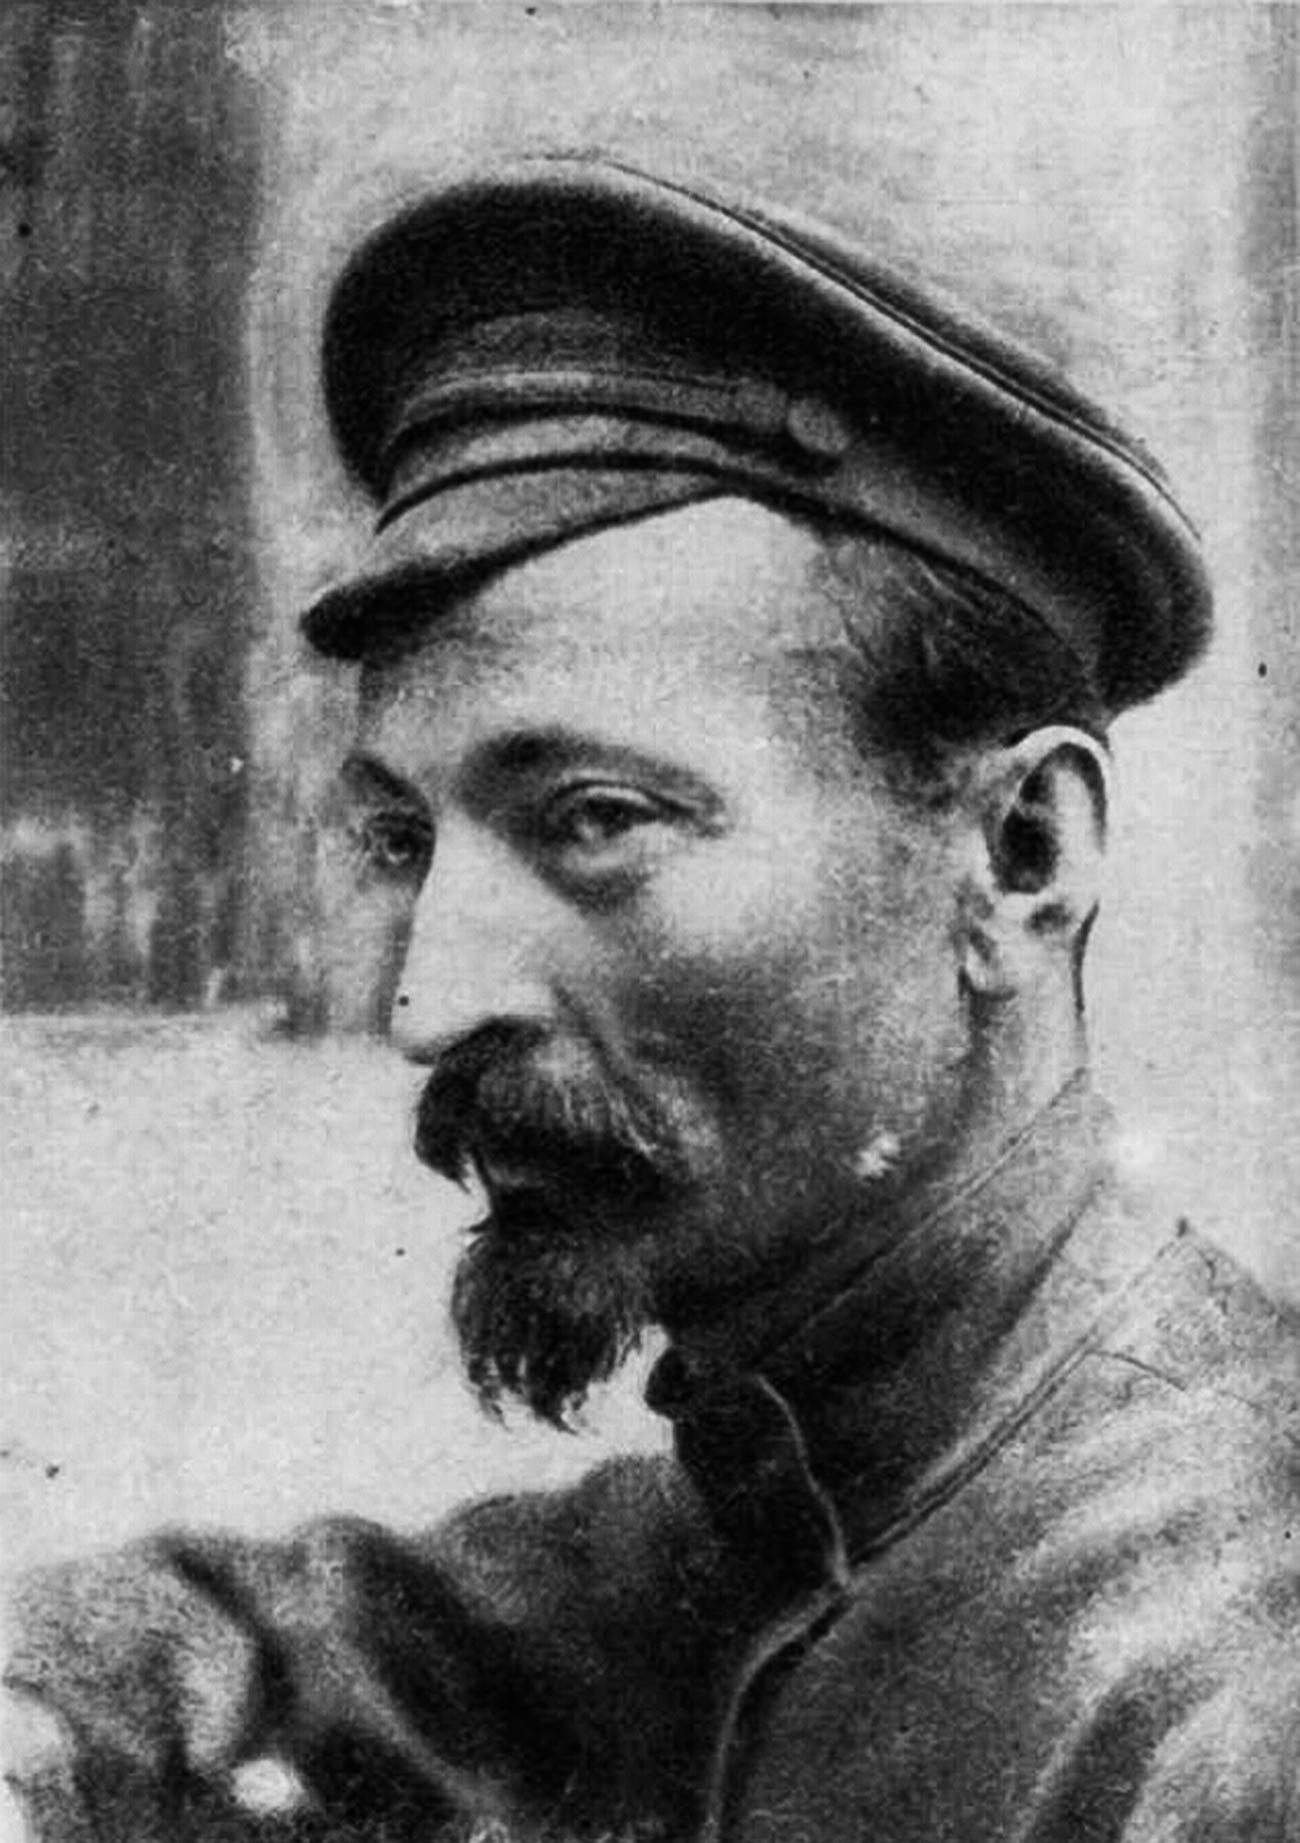 El creador de la famosa checa, Félix Dzerzhinski, 1921

